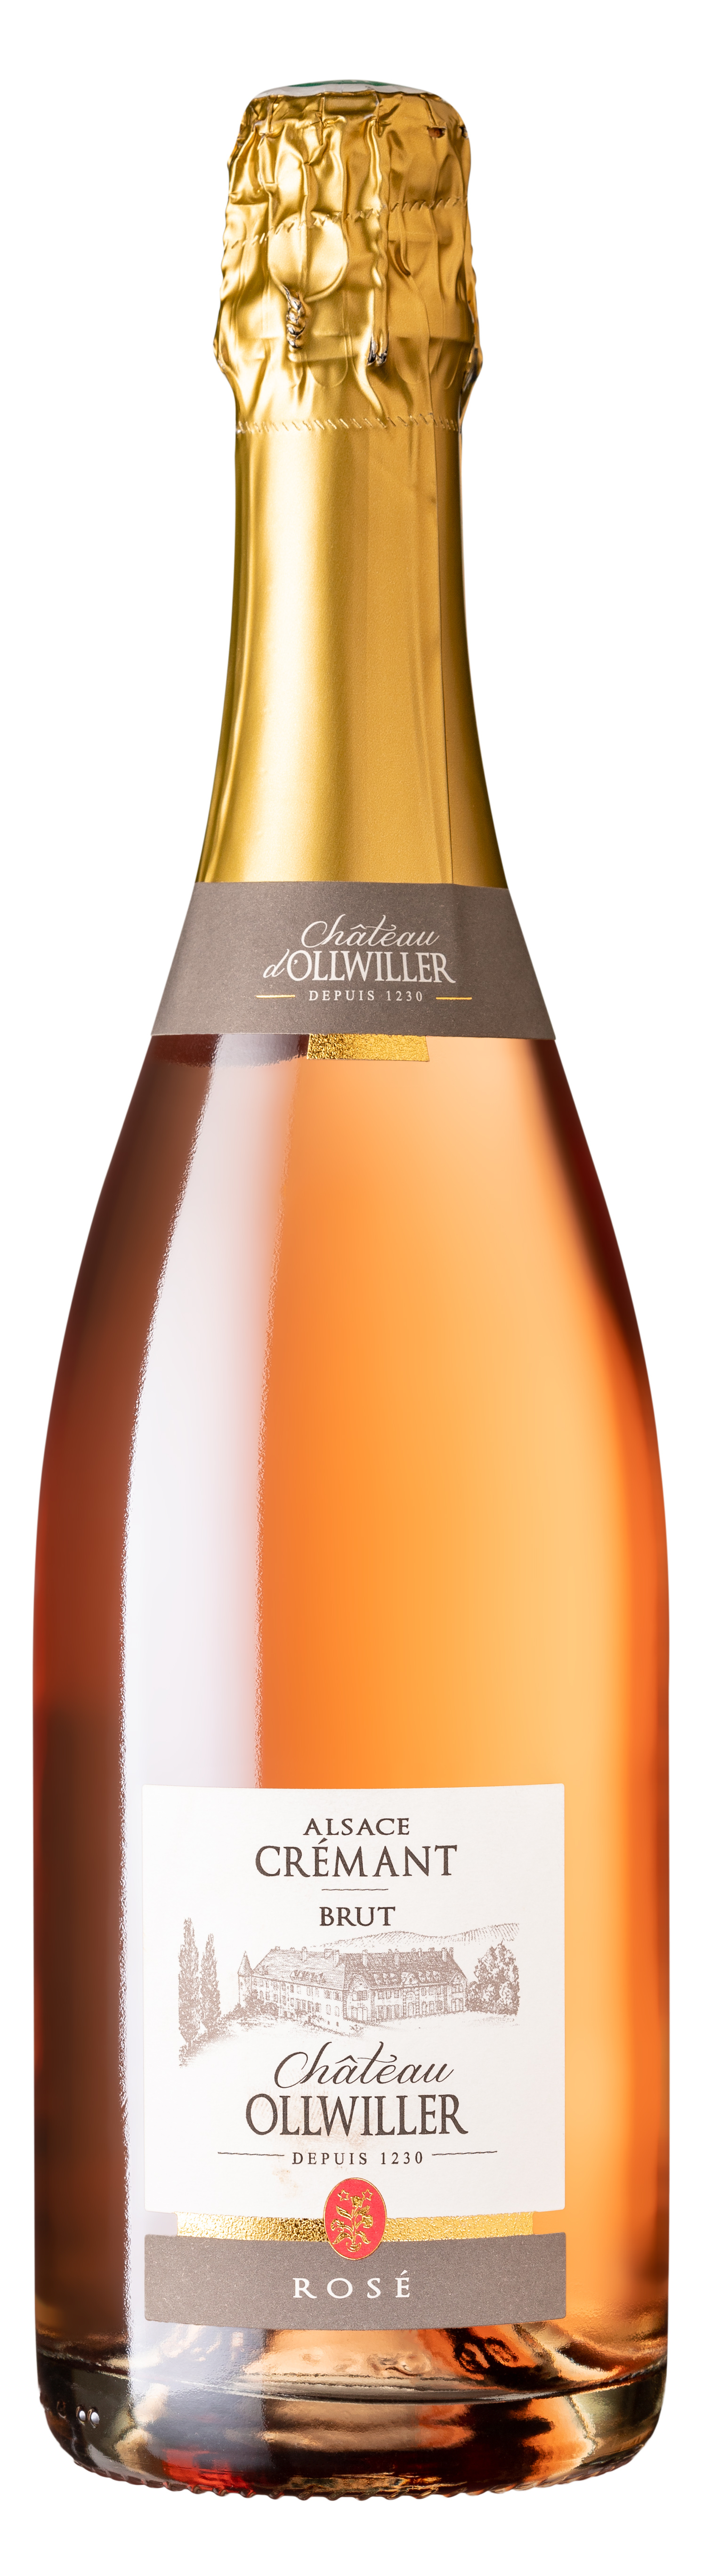 Crémant d'Alsace Brut Rosé Château Ollwiller